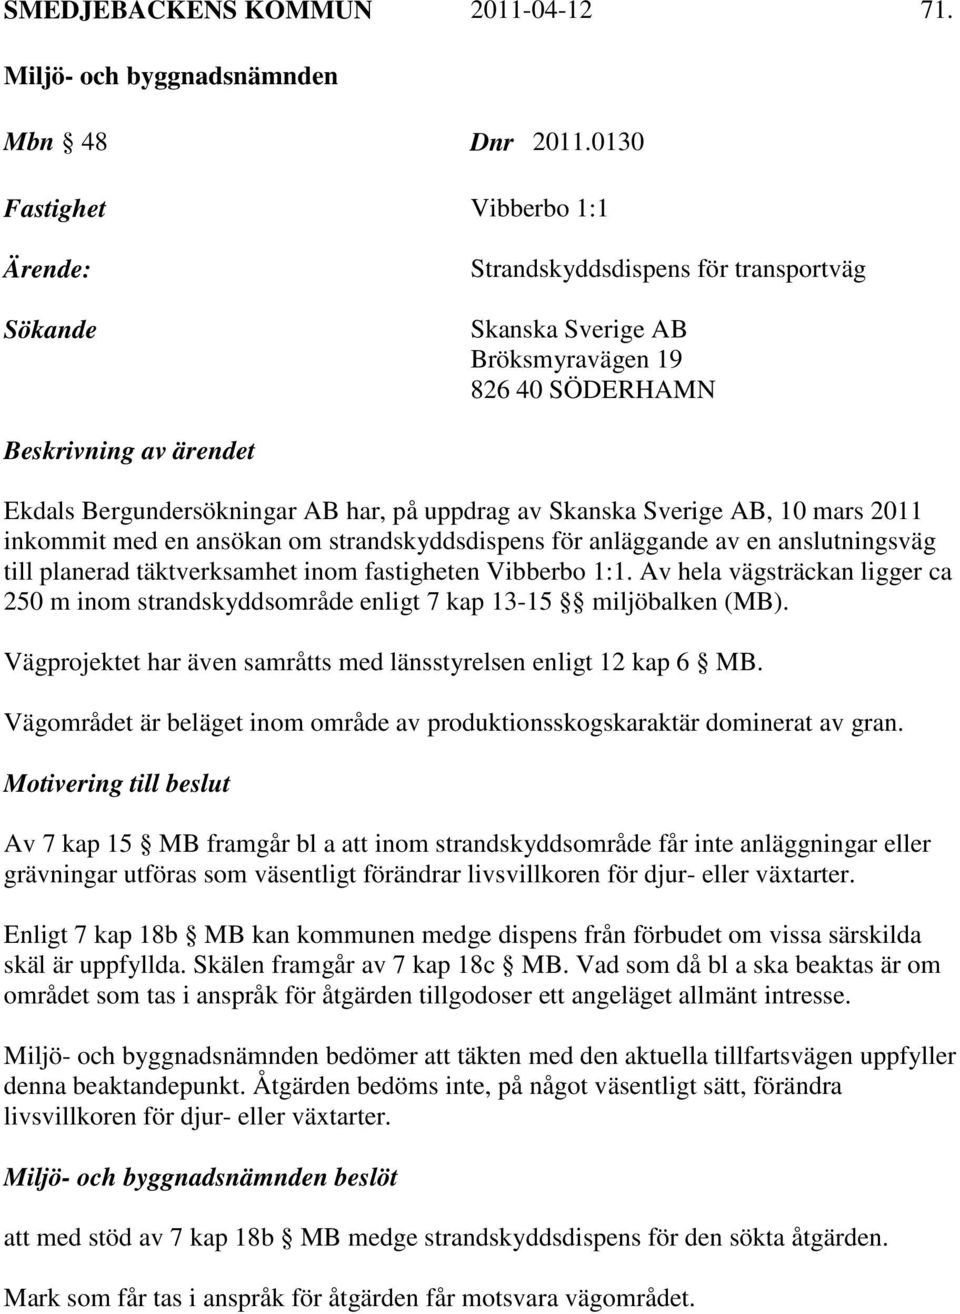 uppdrag av Skanska Sverige AB, 10 mars 2011 inkommit med en ansökan om strandskyddsdispens för anläggande av en anslutningsväg till planerad täktverksamhet inom fastigheten Vibberbo 1:1.